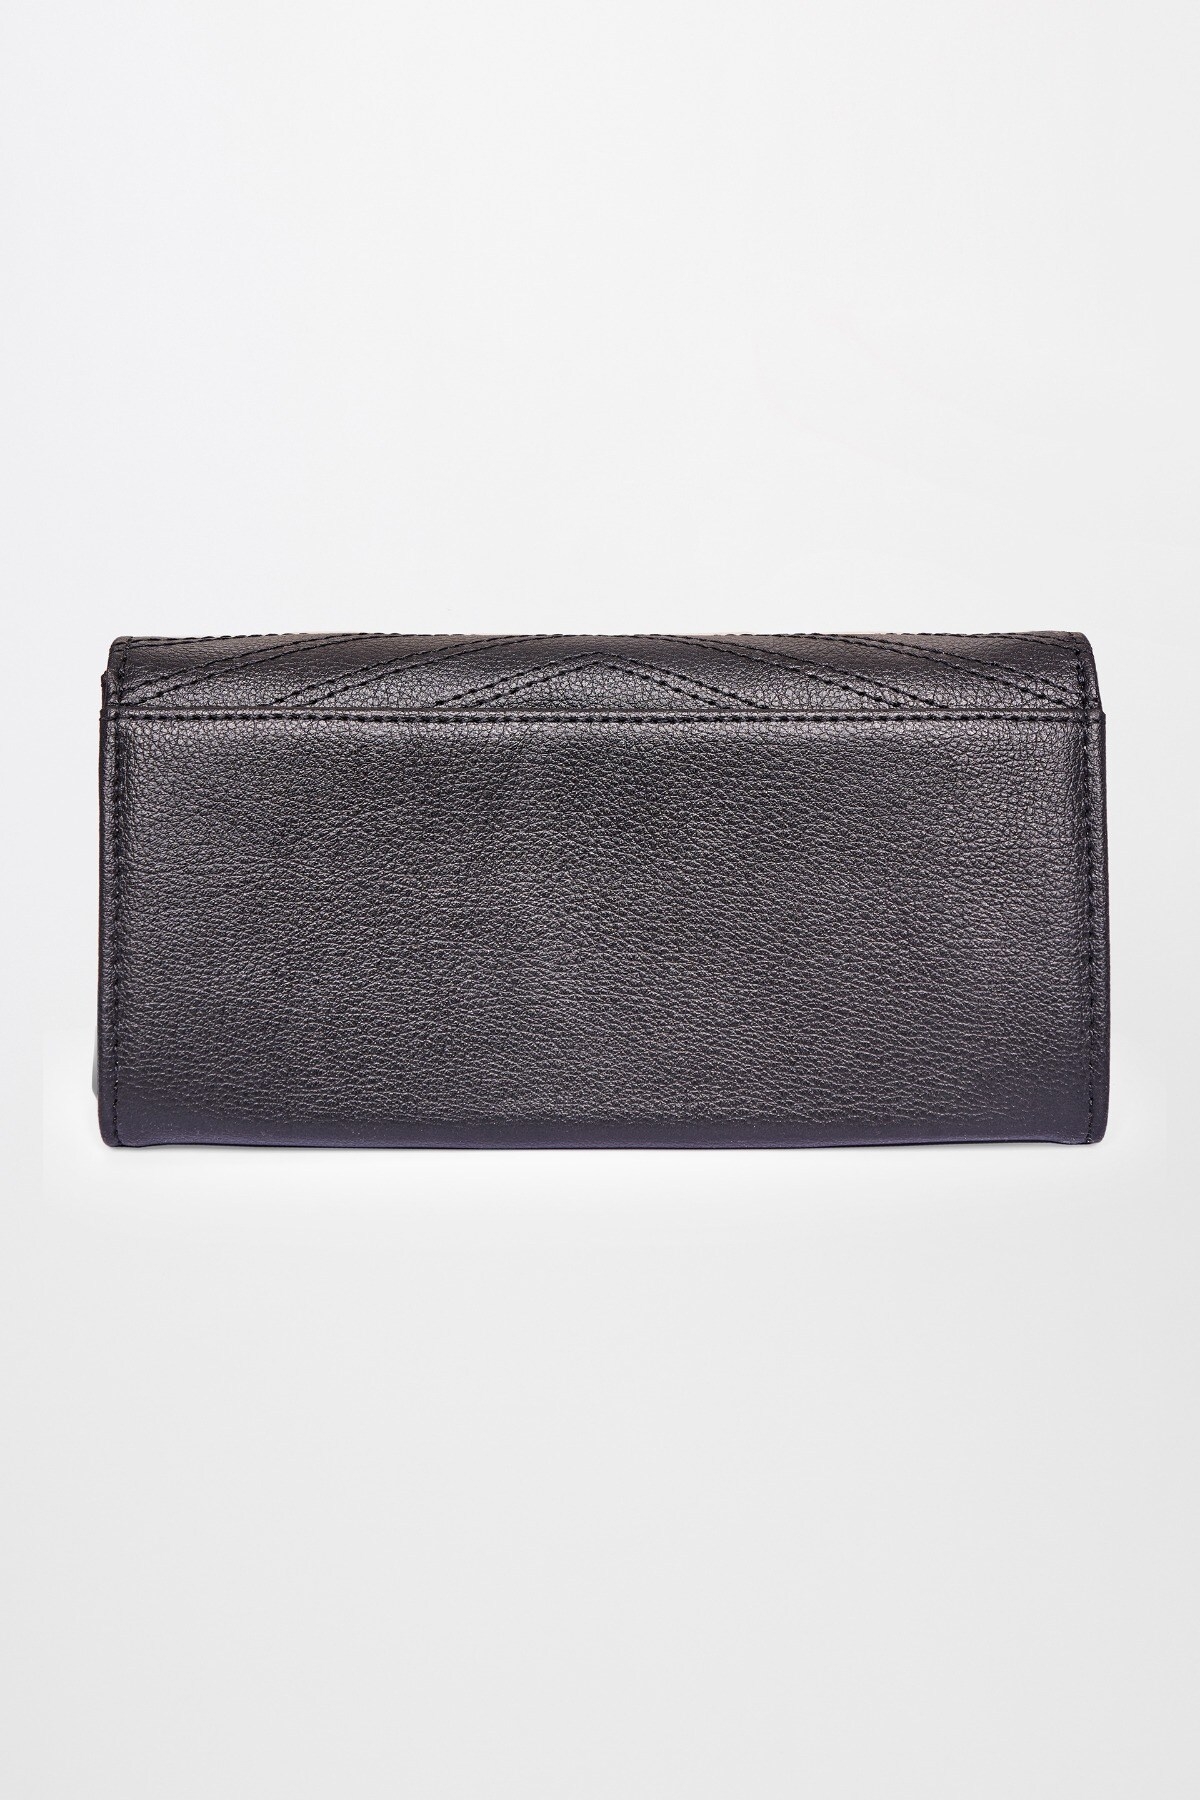 Global Desi | Black Wallet Hand Bag 2